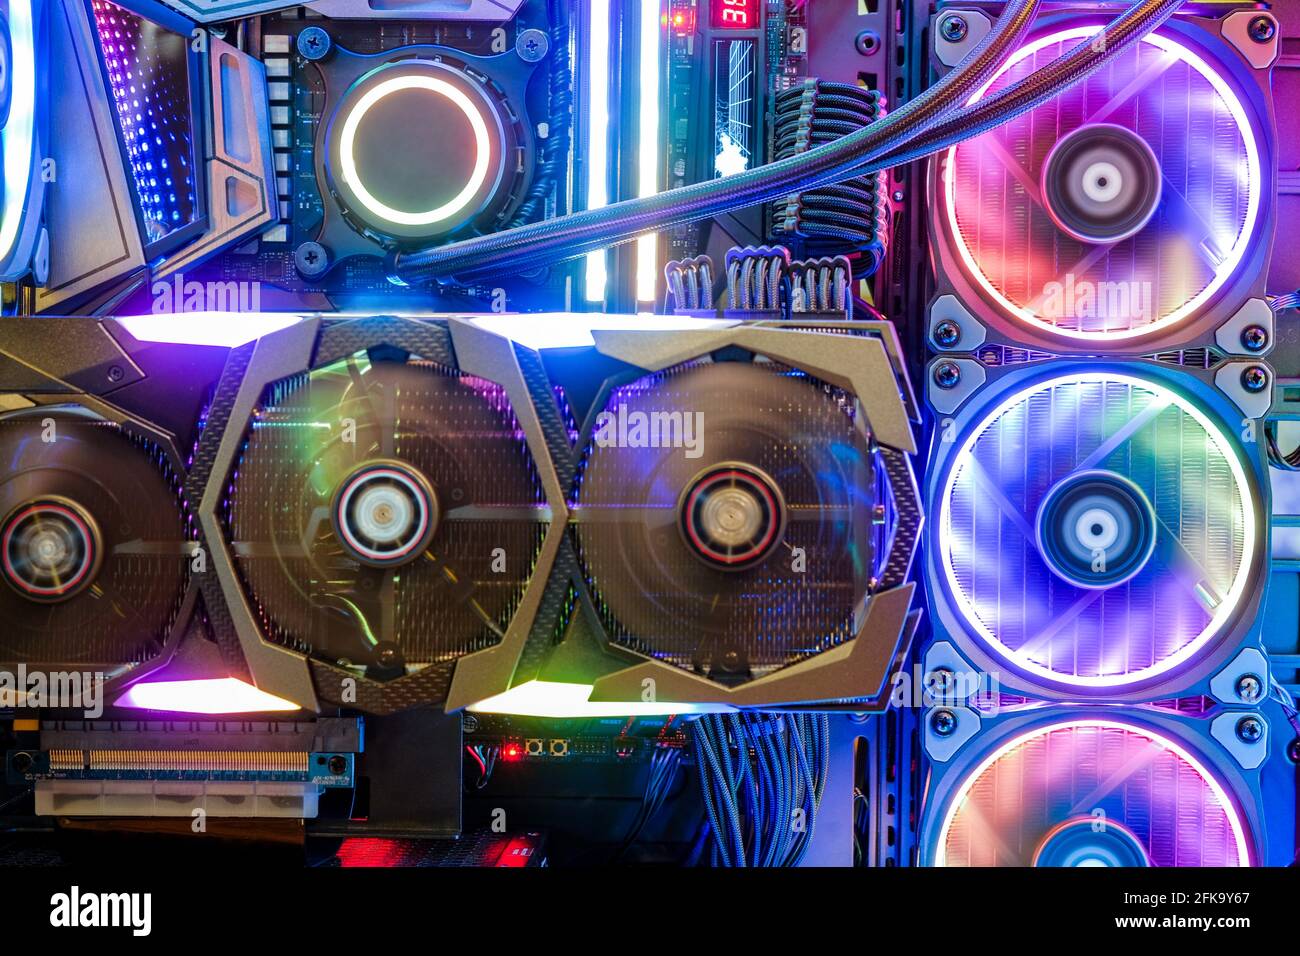 Gros plan et à l'intérieur du PC de bureau jeu et ventilateur CPU Avec LED multicolore, le voyant RVB indique l'état en mode de fonctionnement Banque D'Images